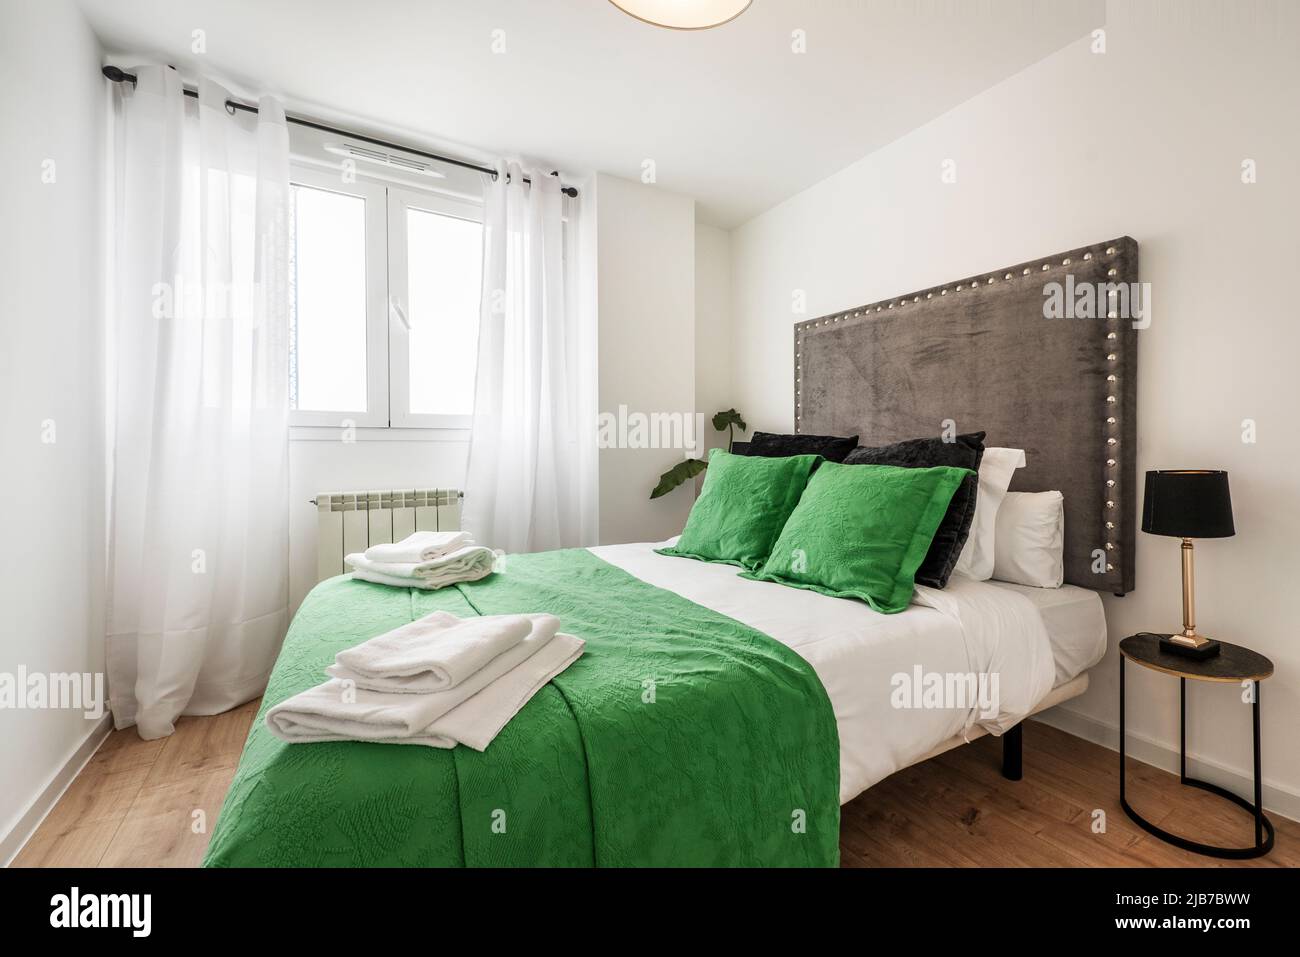 Chambre avec lit double, couvre-lit vert et coussins assortis, tête de lit  en tissu rembourré et rideaux blancs sur la fenêtre Photo Stock - Alamy